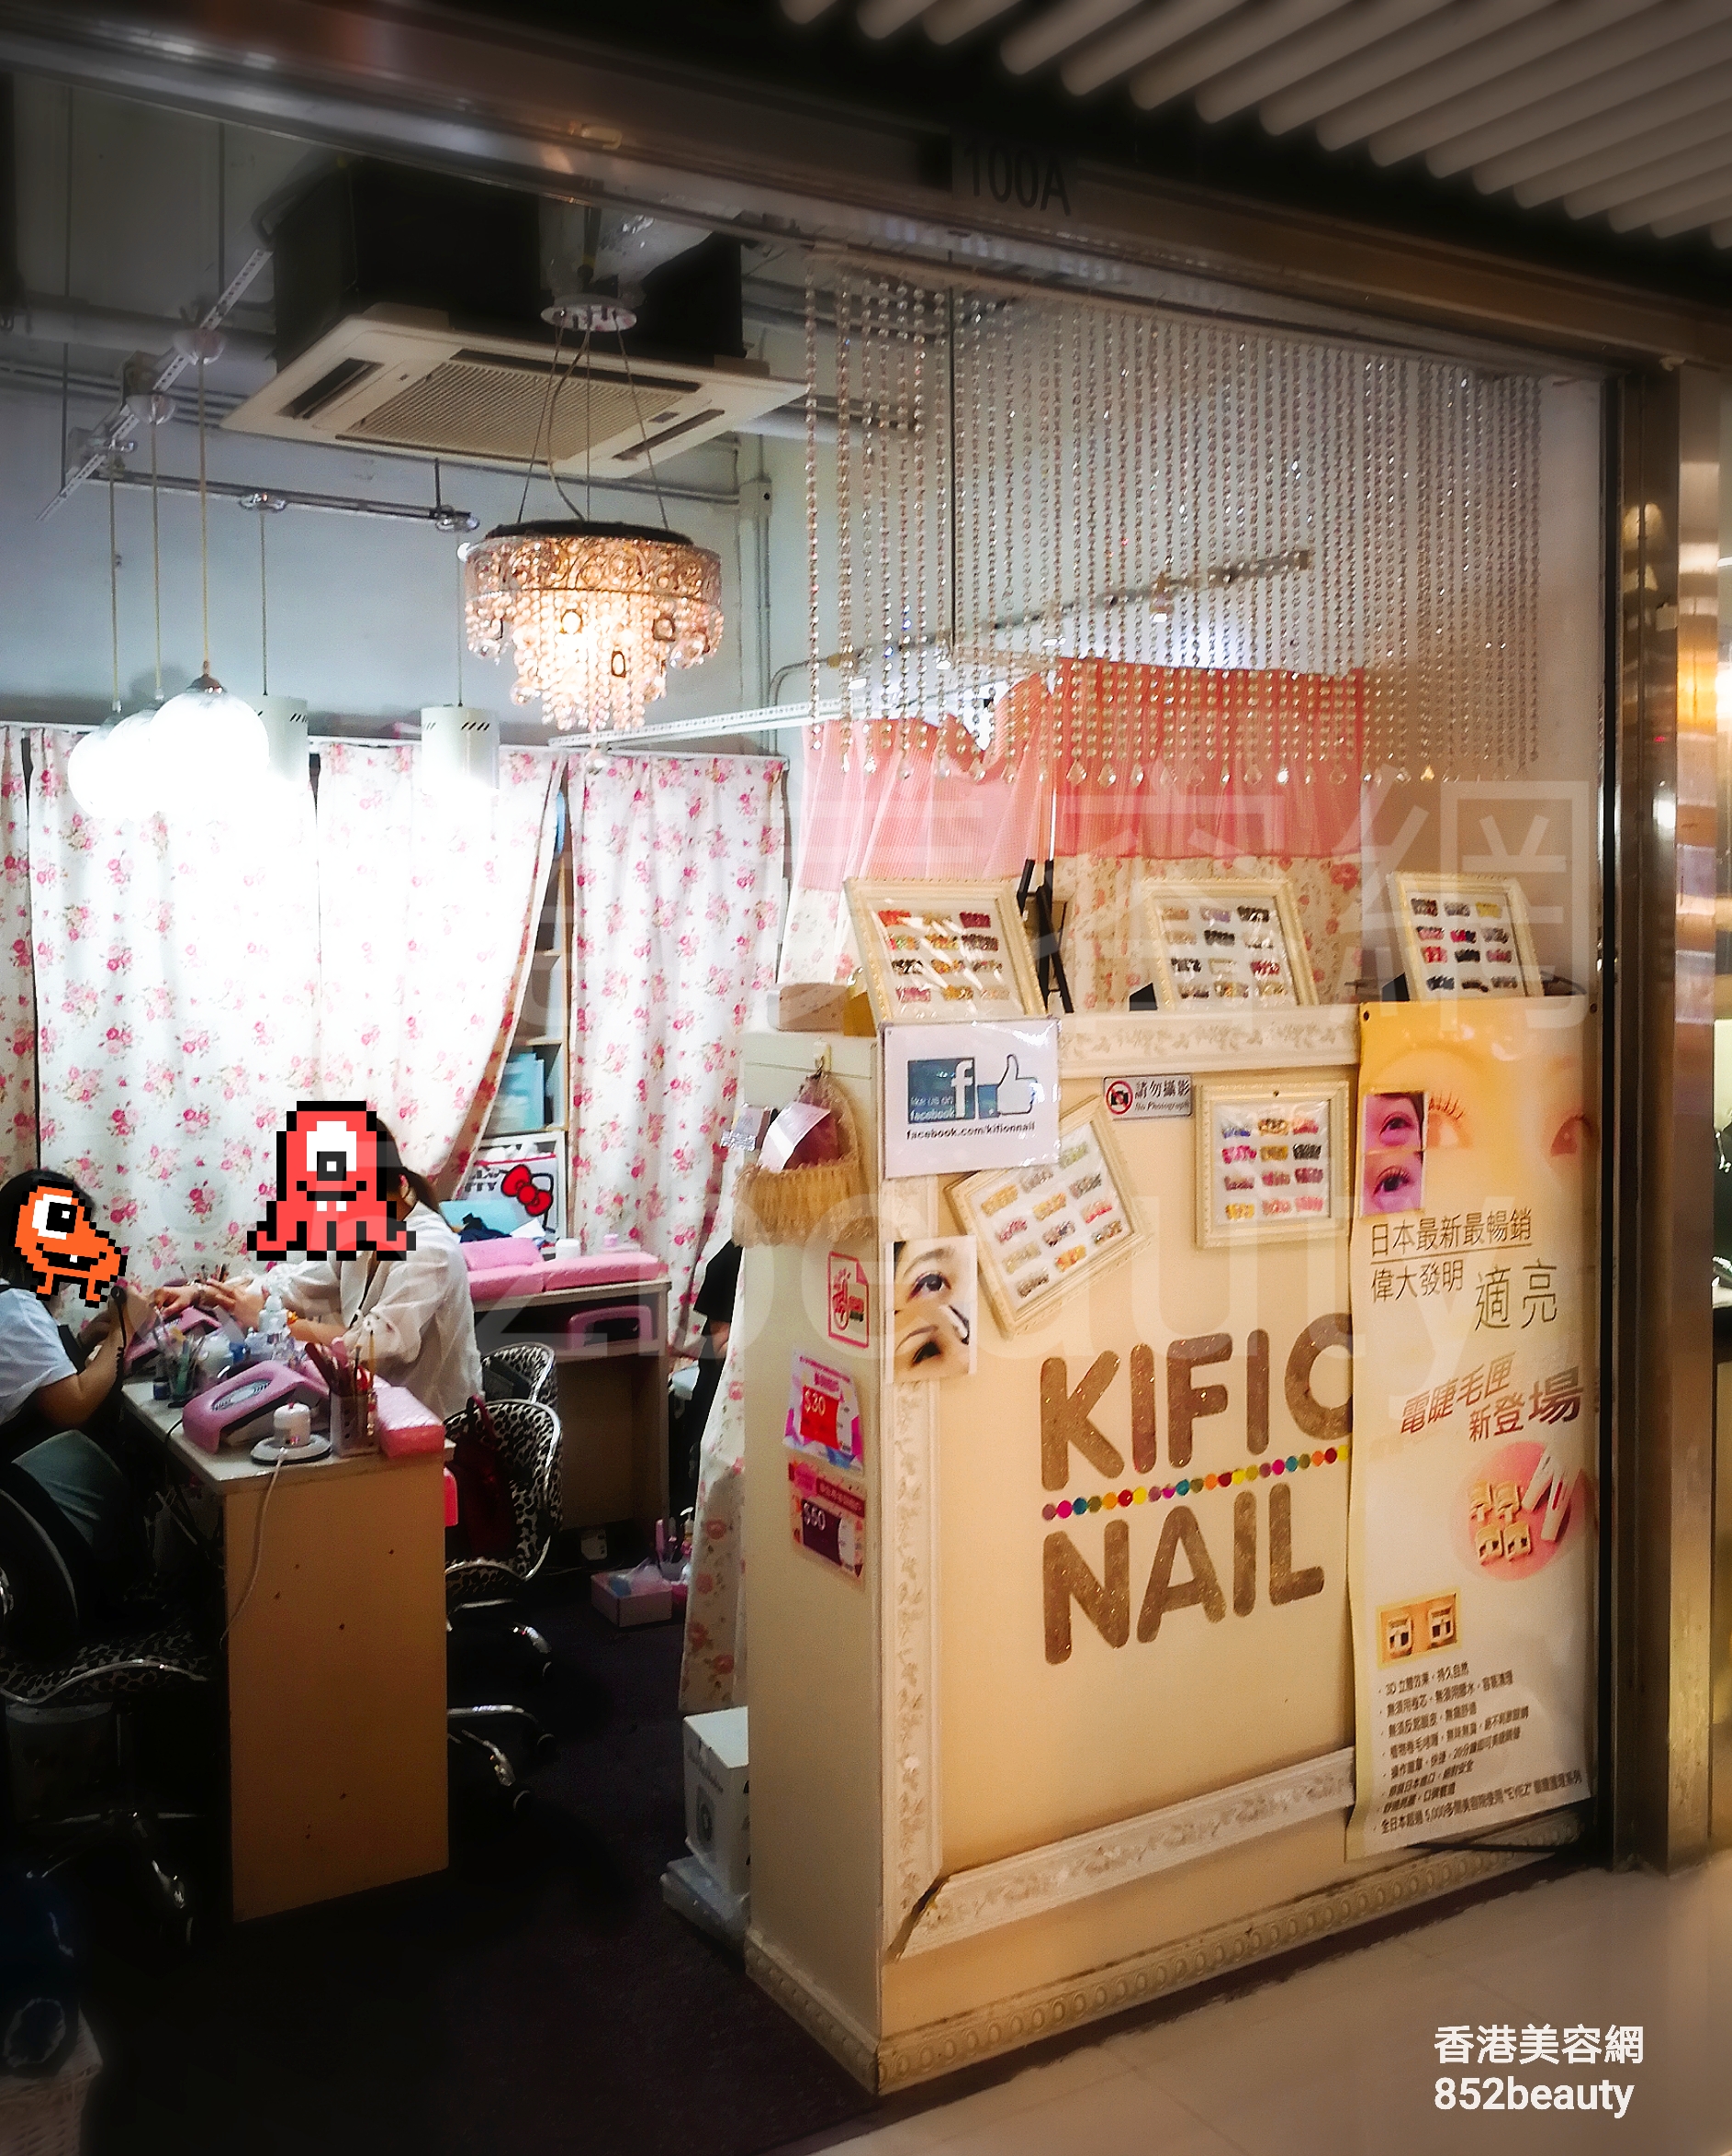 香港美容網 Hong Kong Beauty Salon 美容院 / 美容師: KIFION NAIL